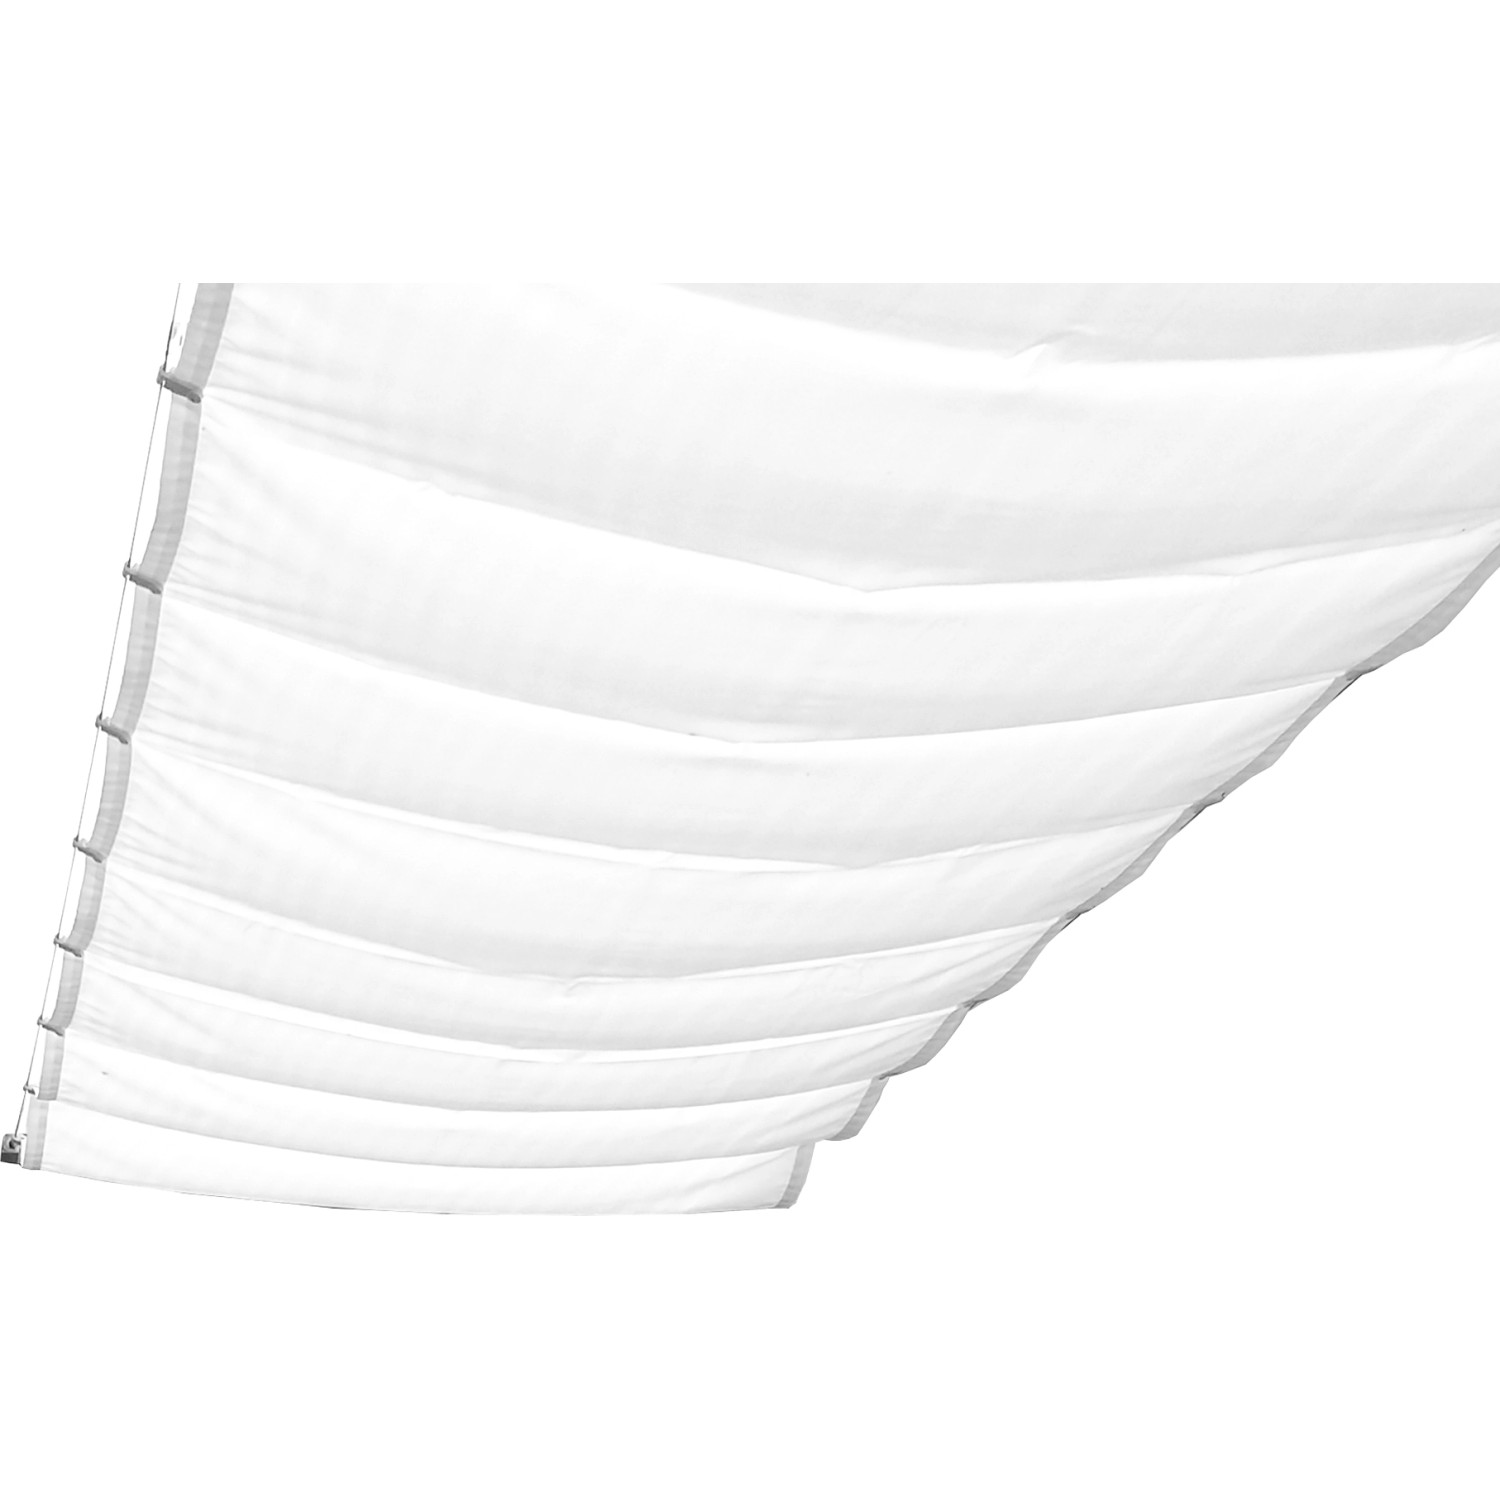 Peddy Shield Sonnensegel 275 cm x 61 cm Uni Weiß